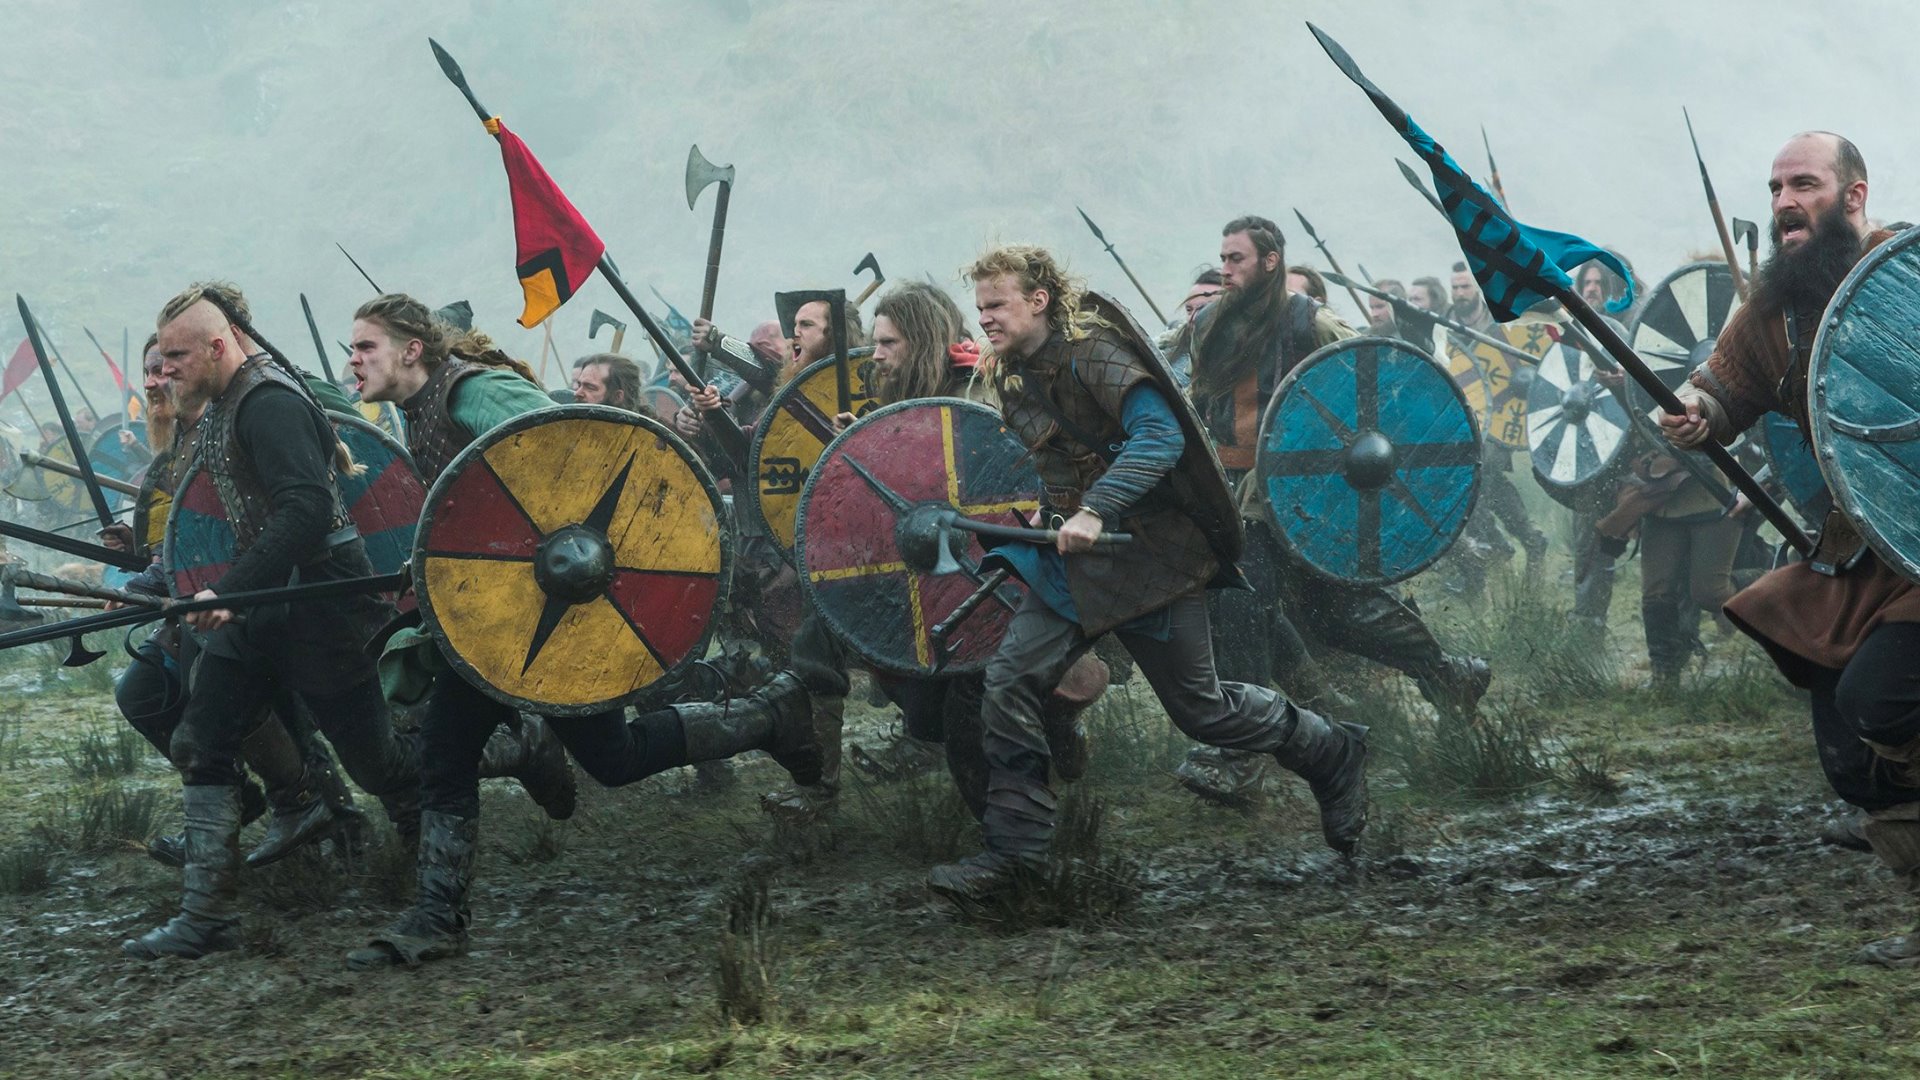 Vikingové – objevitelé a válečníci severu